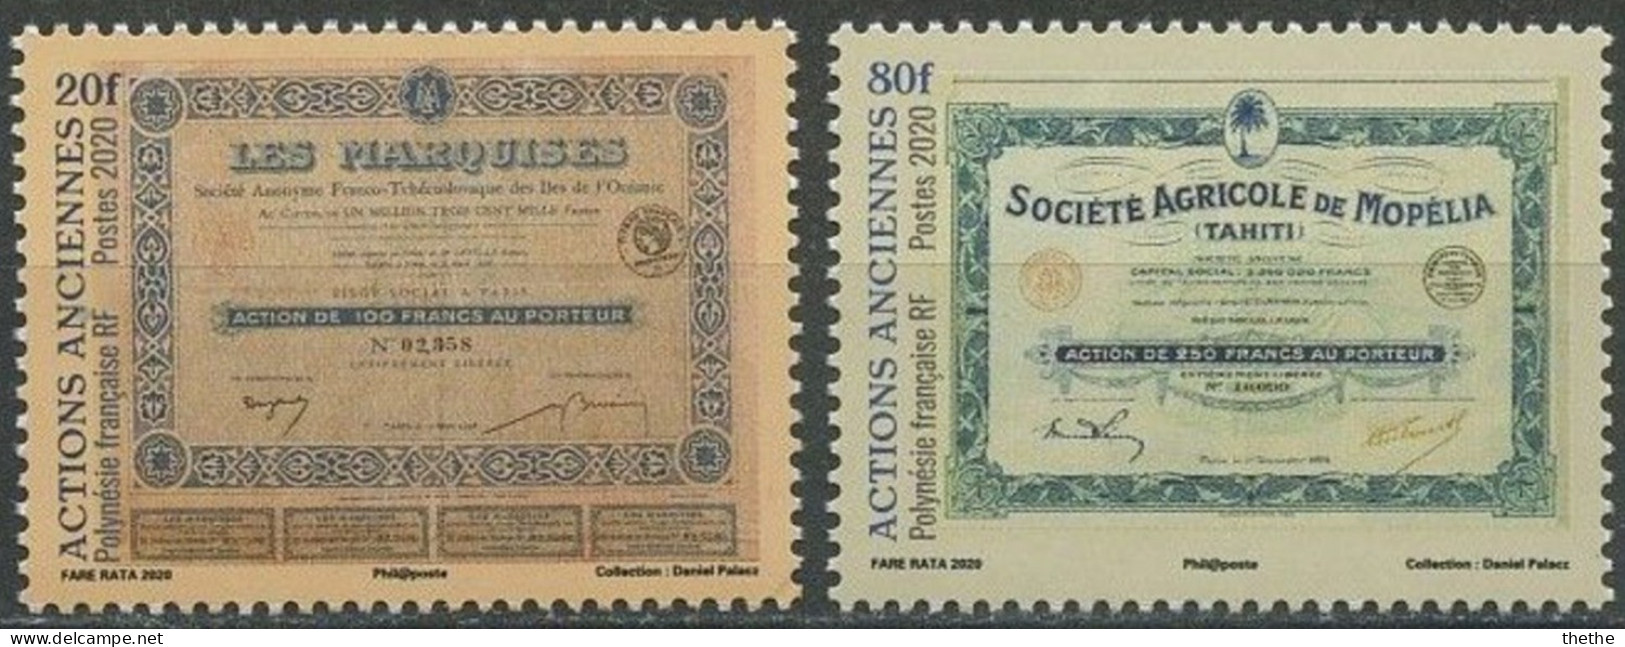 POLYNESIE - Certificat D'actions De La Société Les Marquises - Certificat D'actions De La Société Agricole Mopelia - Unused Stamps